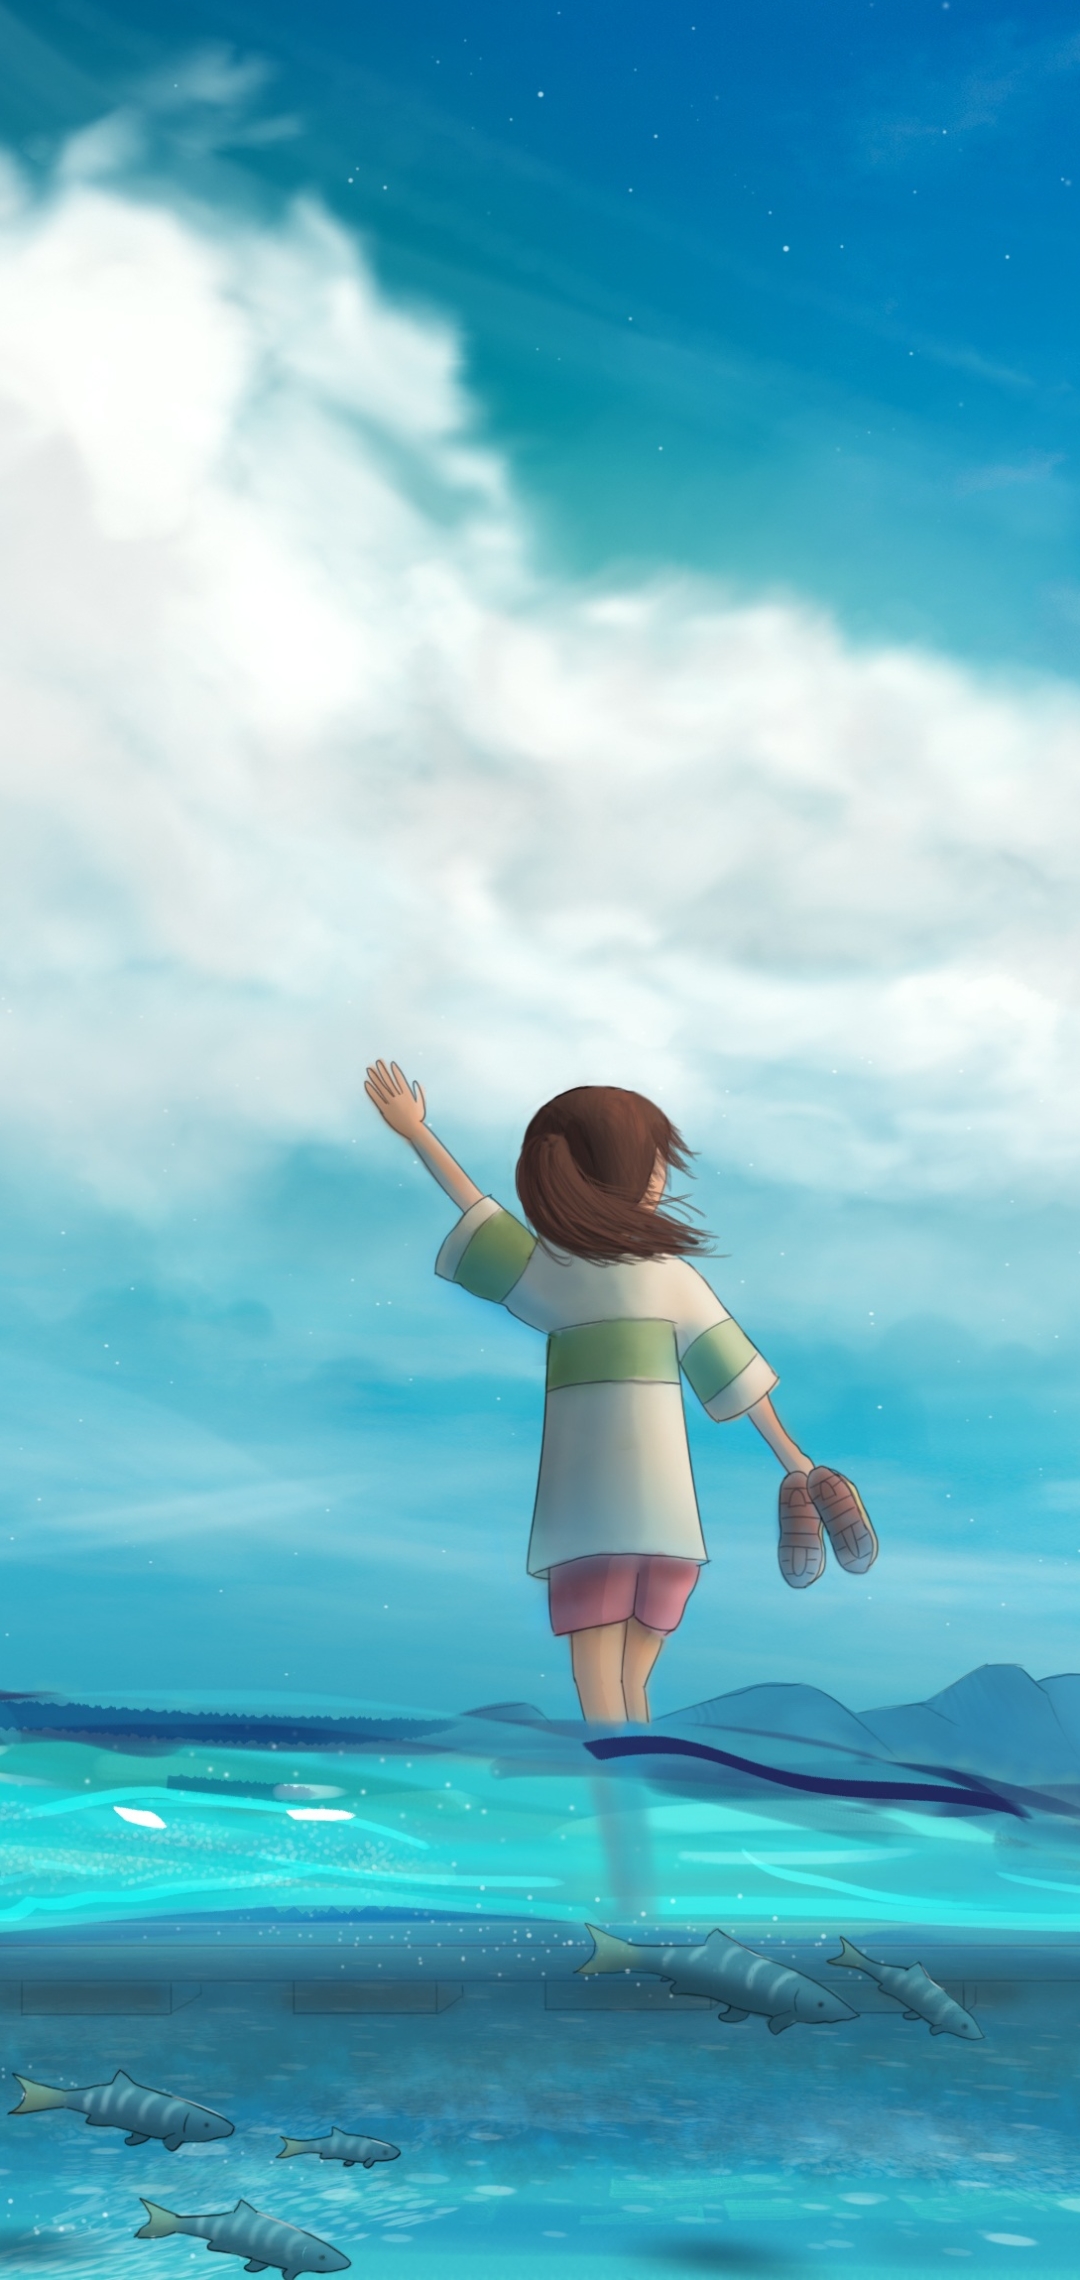 Descarga gratuita de fondo de pantalla para móvil de Animado, El Viaje De Chihiro.